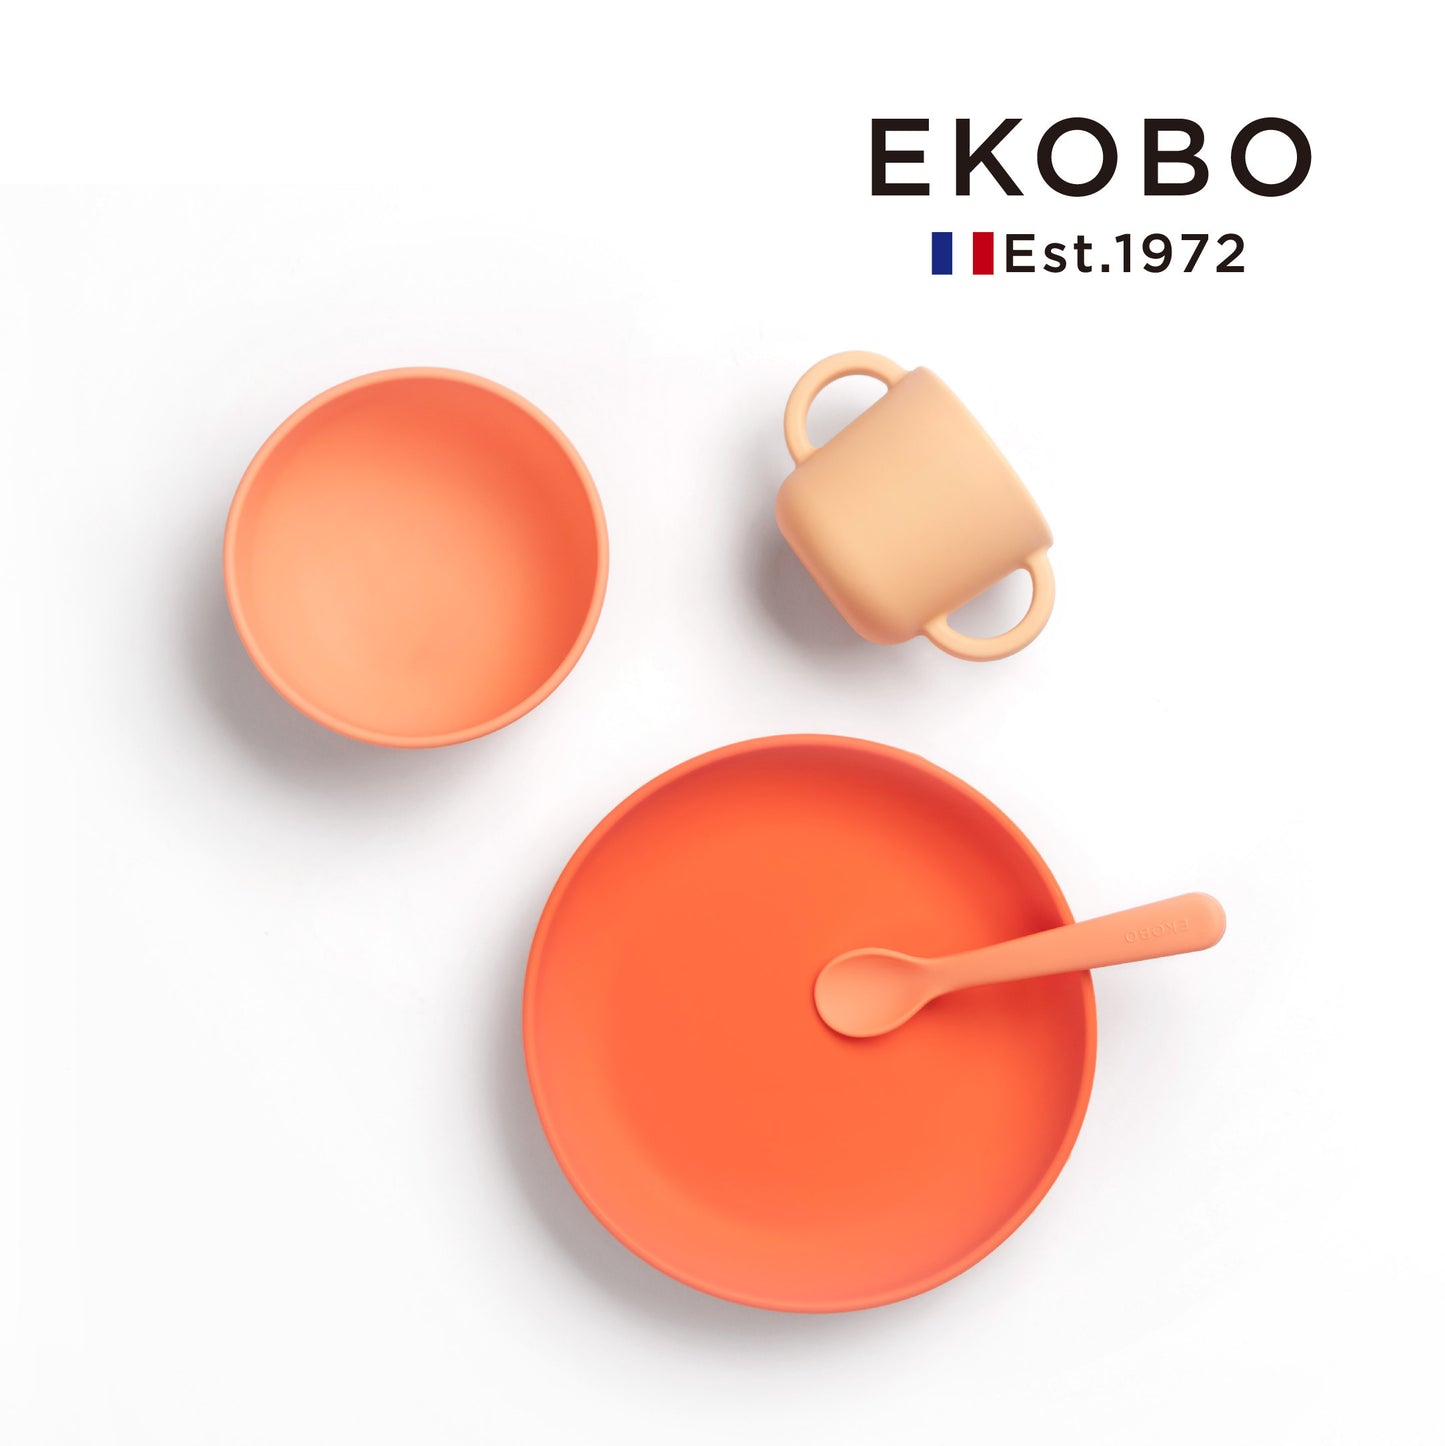 【EKOBO】Non-slip silicone study tableware four-piece set-cream powder